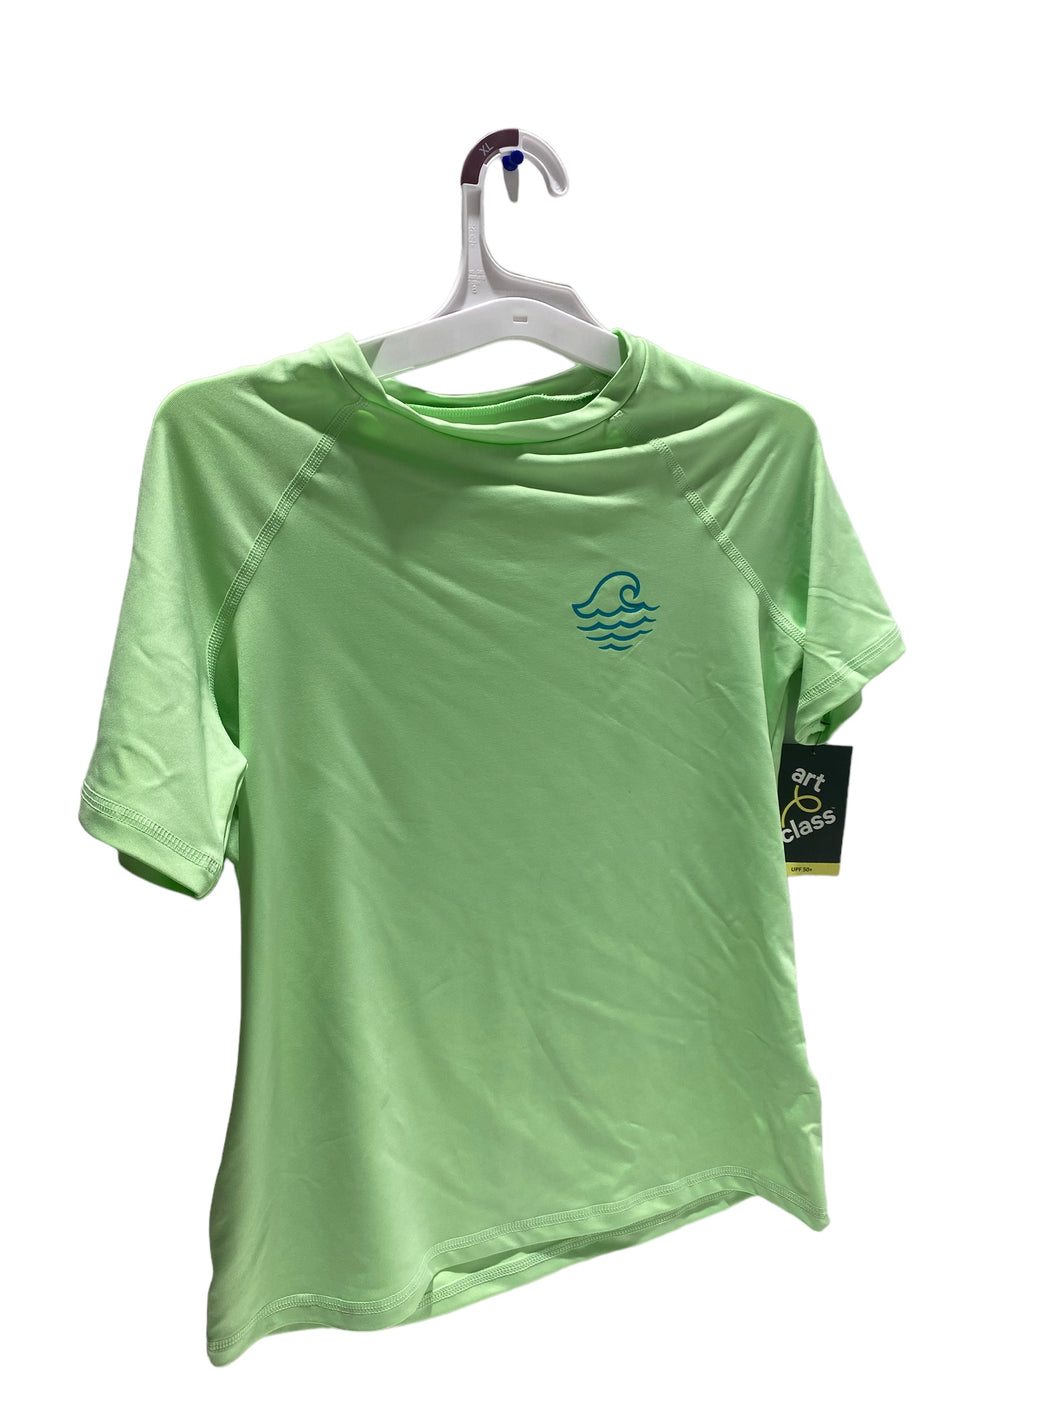 Art Class Green Short Sleeve Shirt Kids Size-XL - FreemanLiquidators - [product_description]